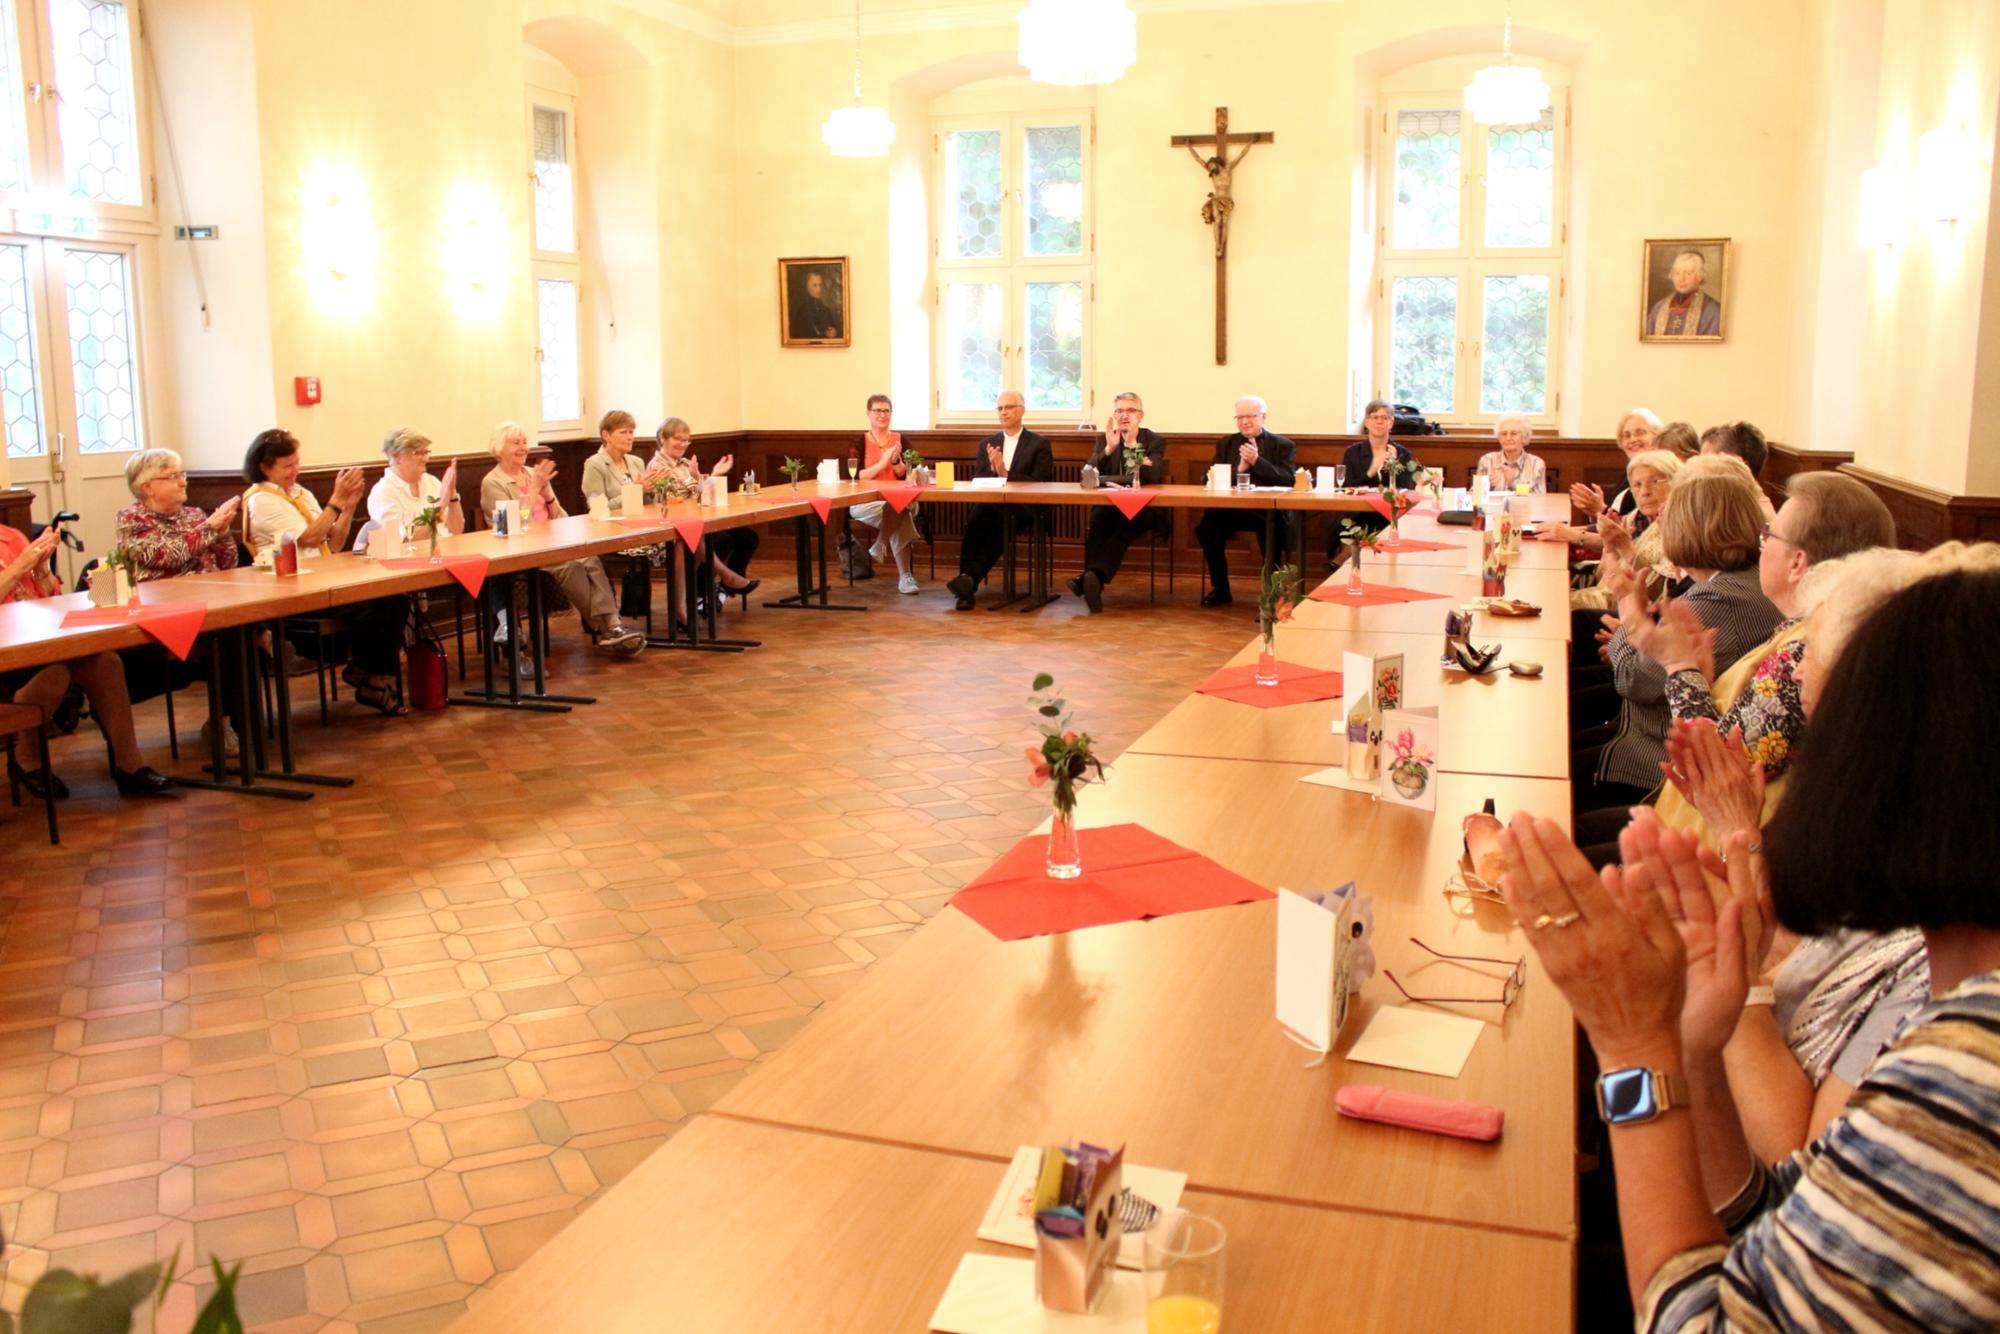 Mainz, 8. Juni 2022: Die Jubiläumsfeier fand in der Aula des Priesterseminars statt. (c) Bistum Mainz / Blum